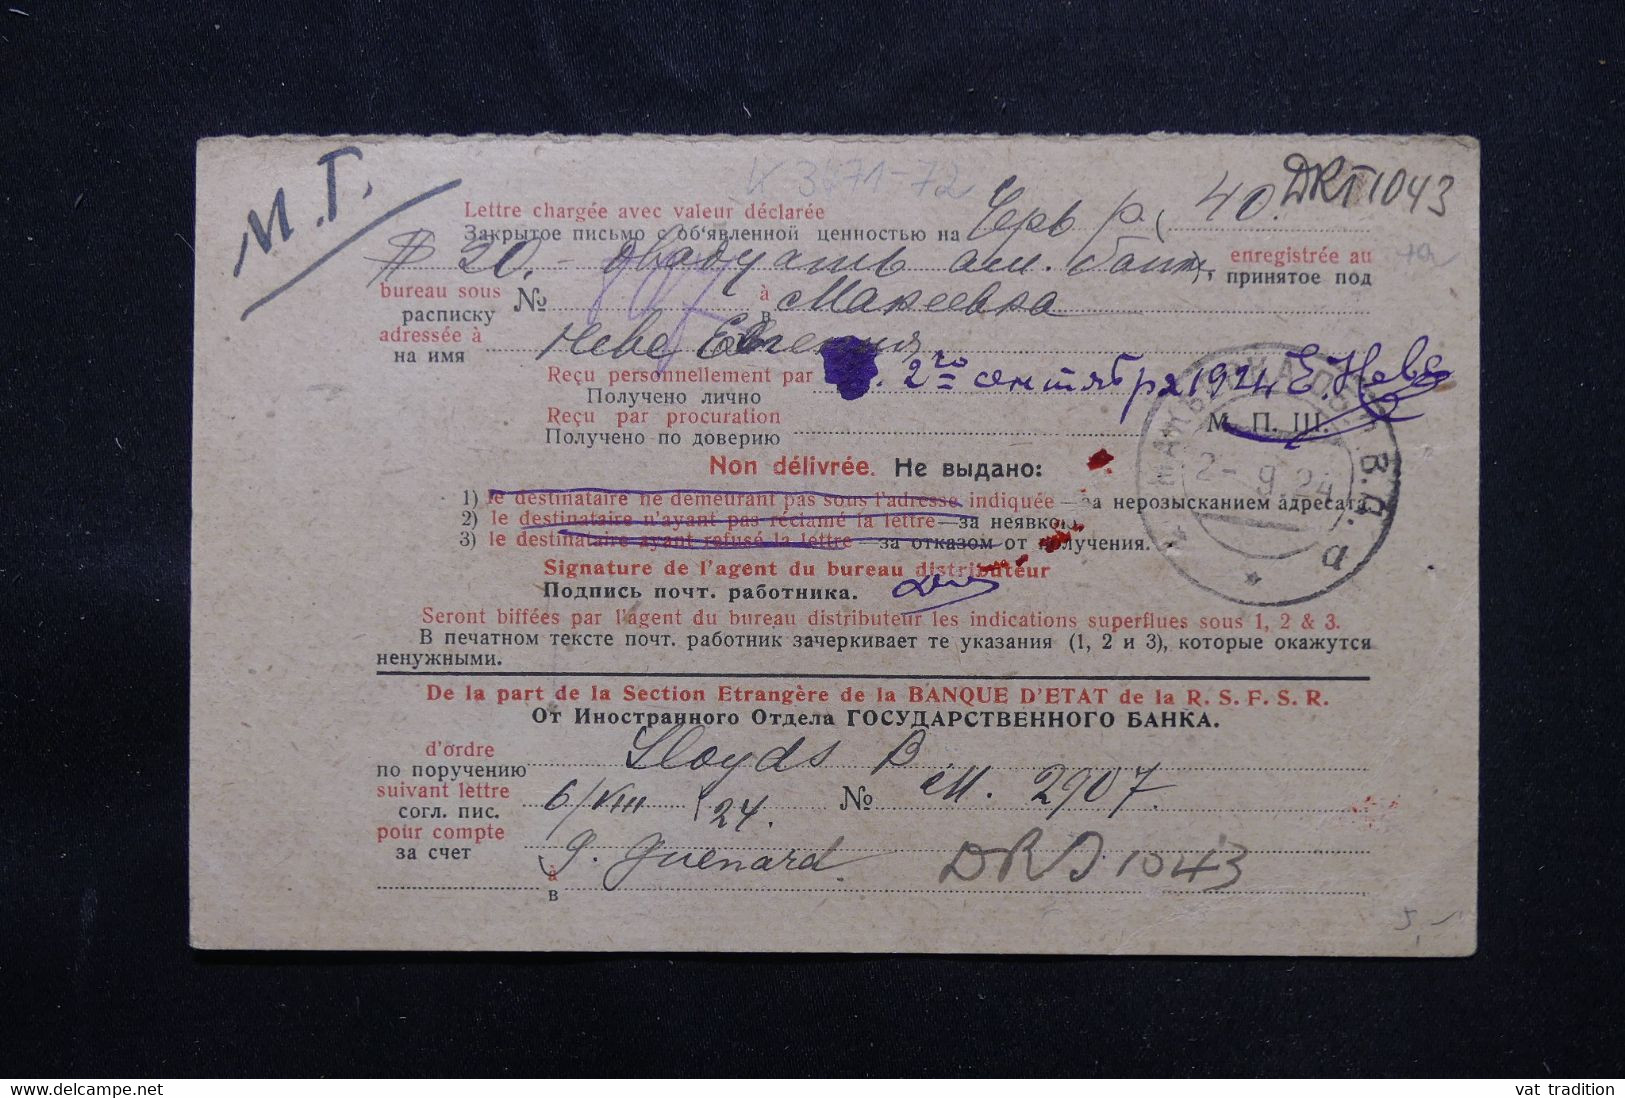 U.R.S.S. - Carte D'un Envoi En Recommandé ( Voir Au Dos ) Pour Londres En 1924 - L 75395 - Covers & Documents